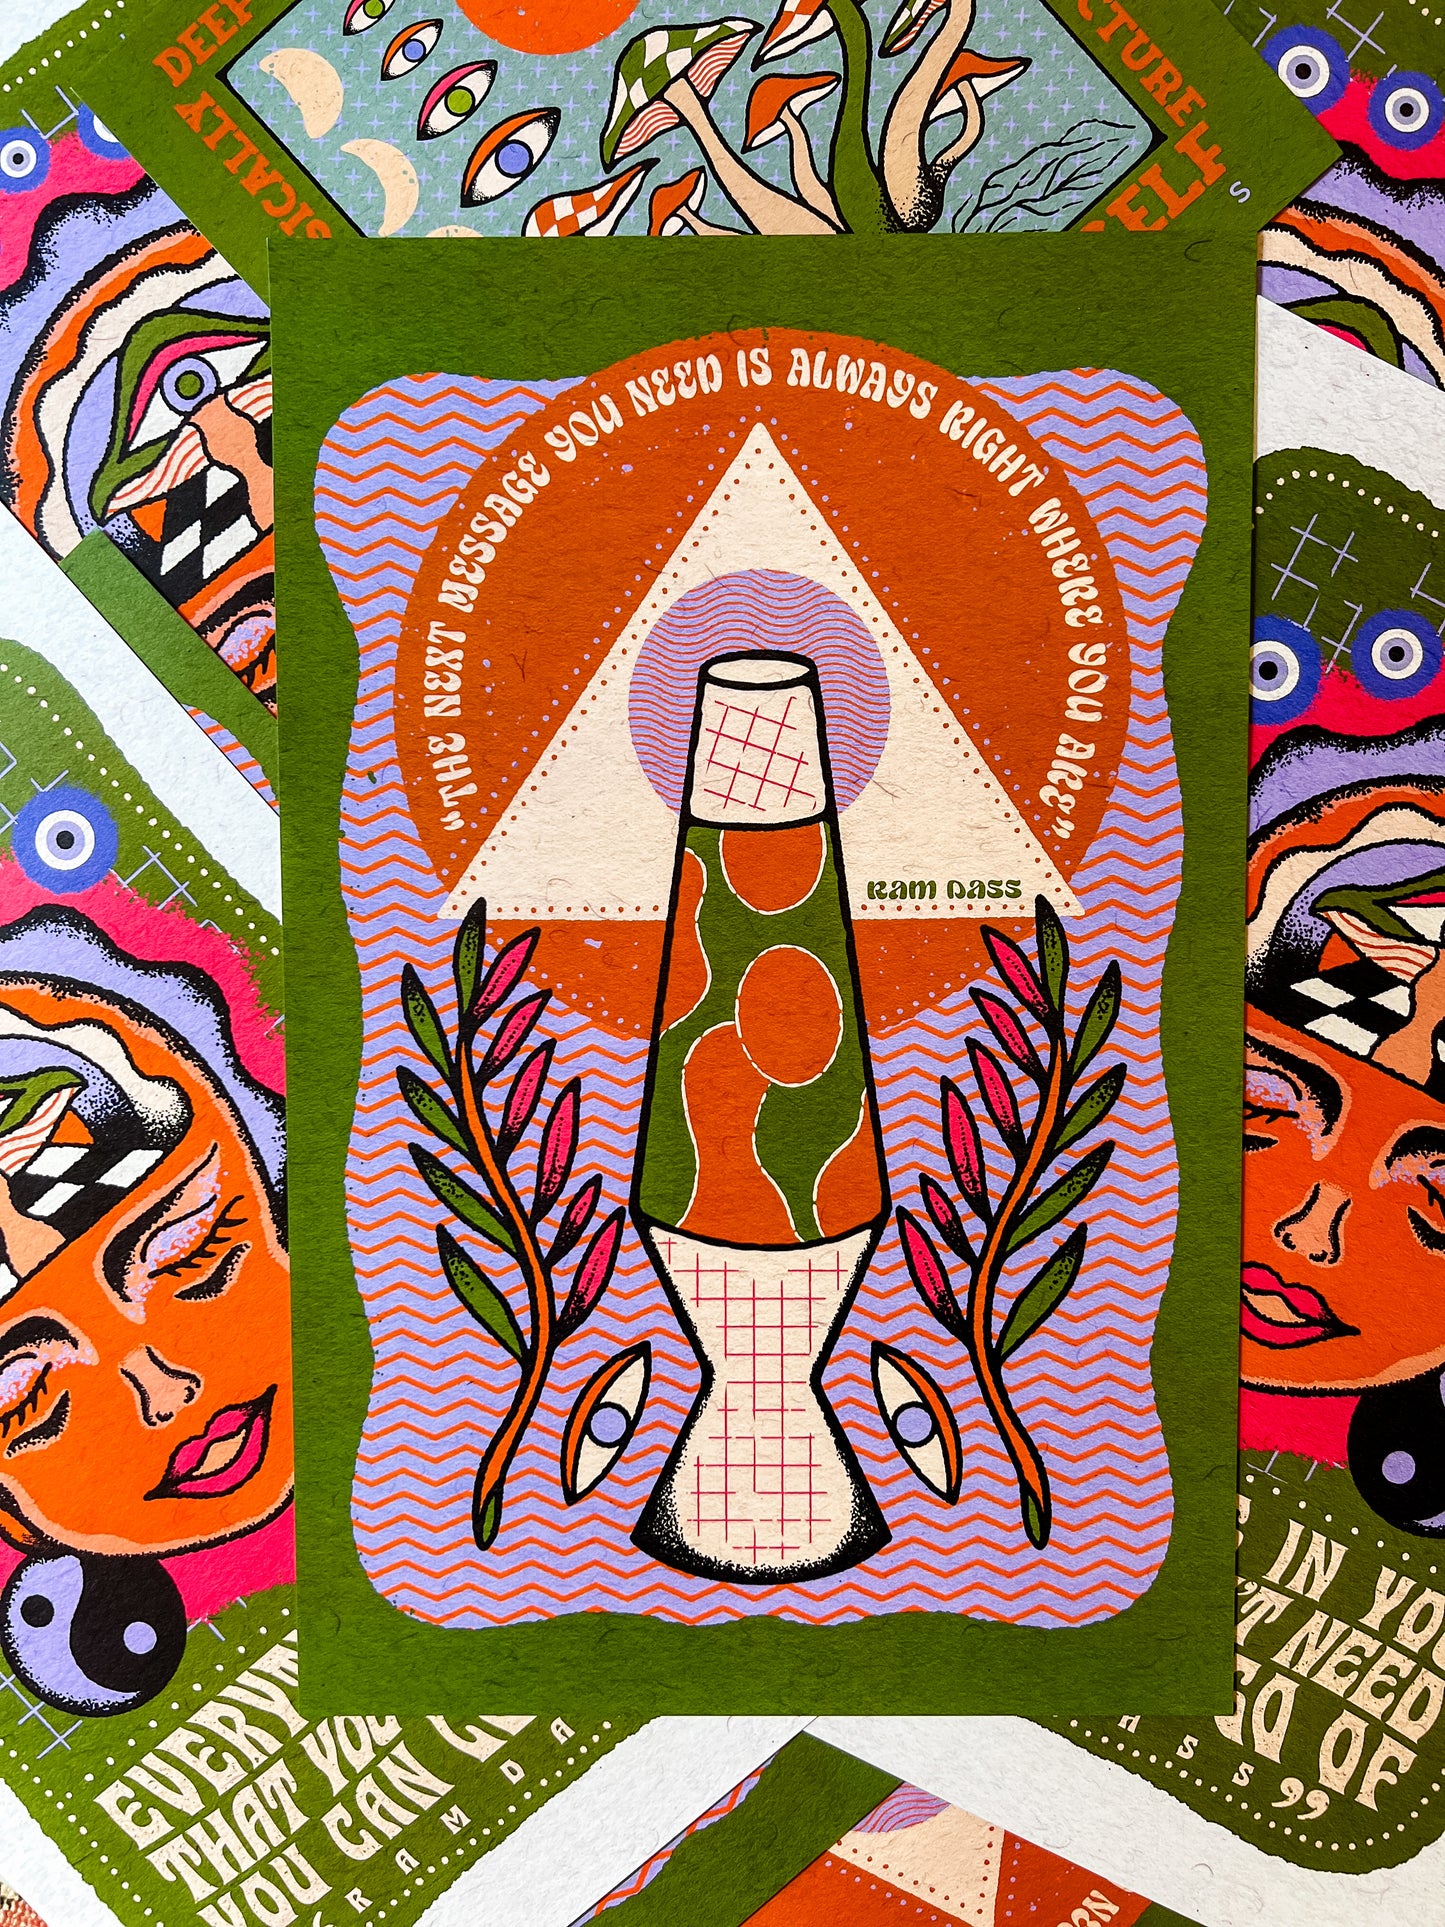 The Next Message Poster (Ram Dass)